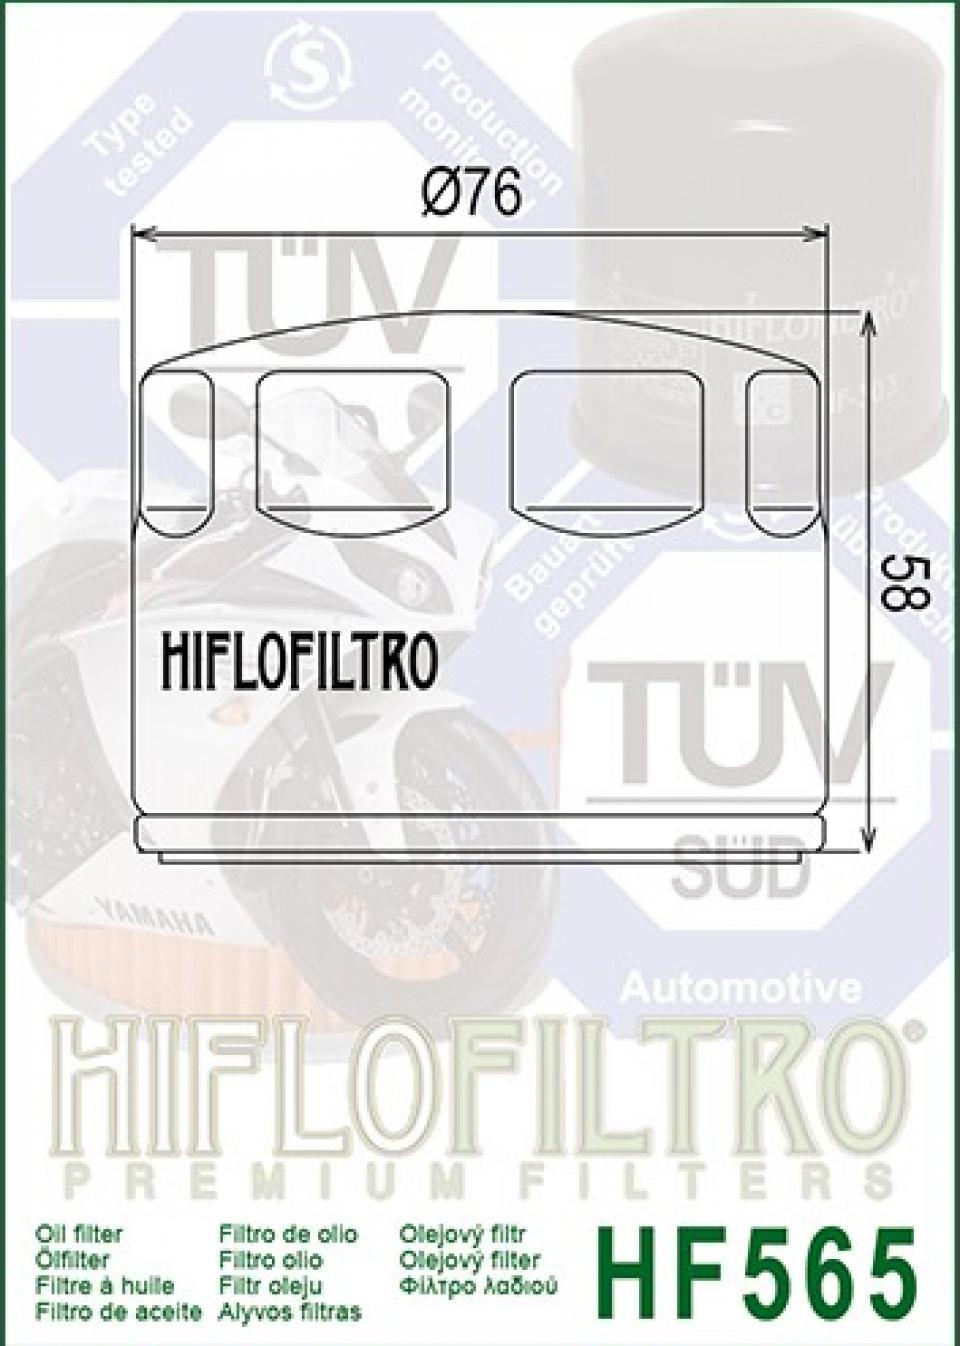 Filtre à huile Hiflofiltro pour Auto HF565 Neuf